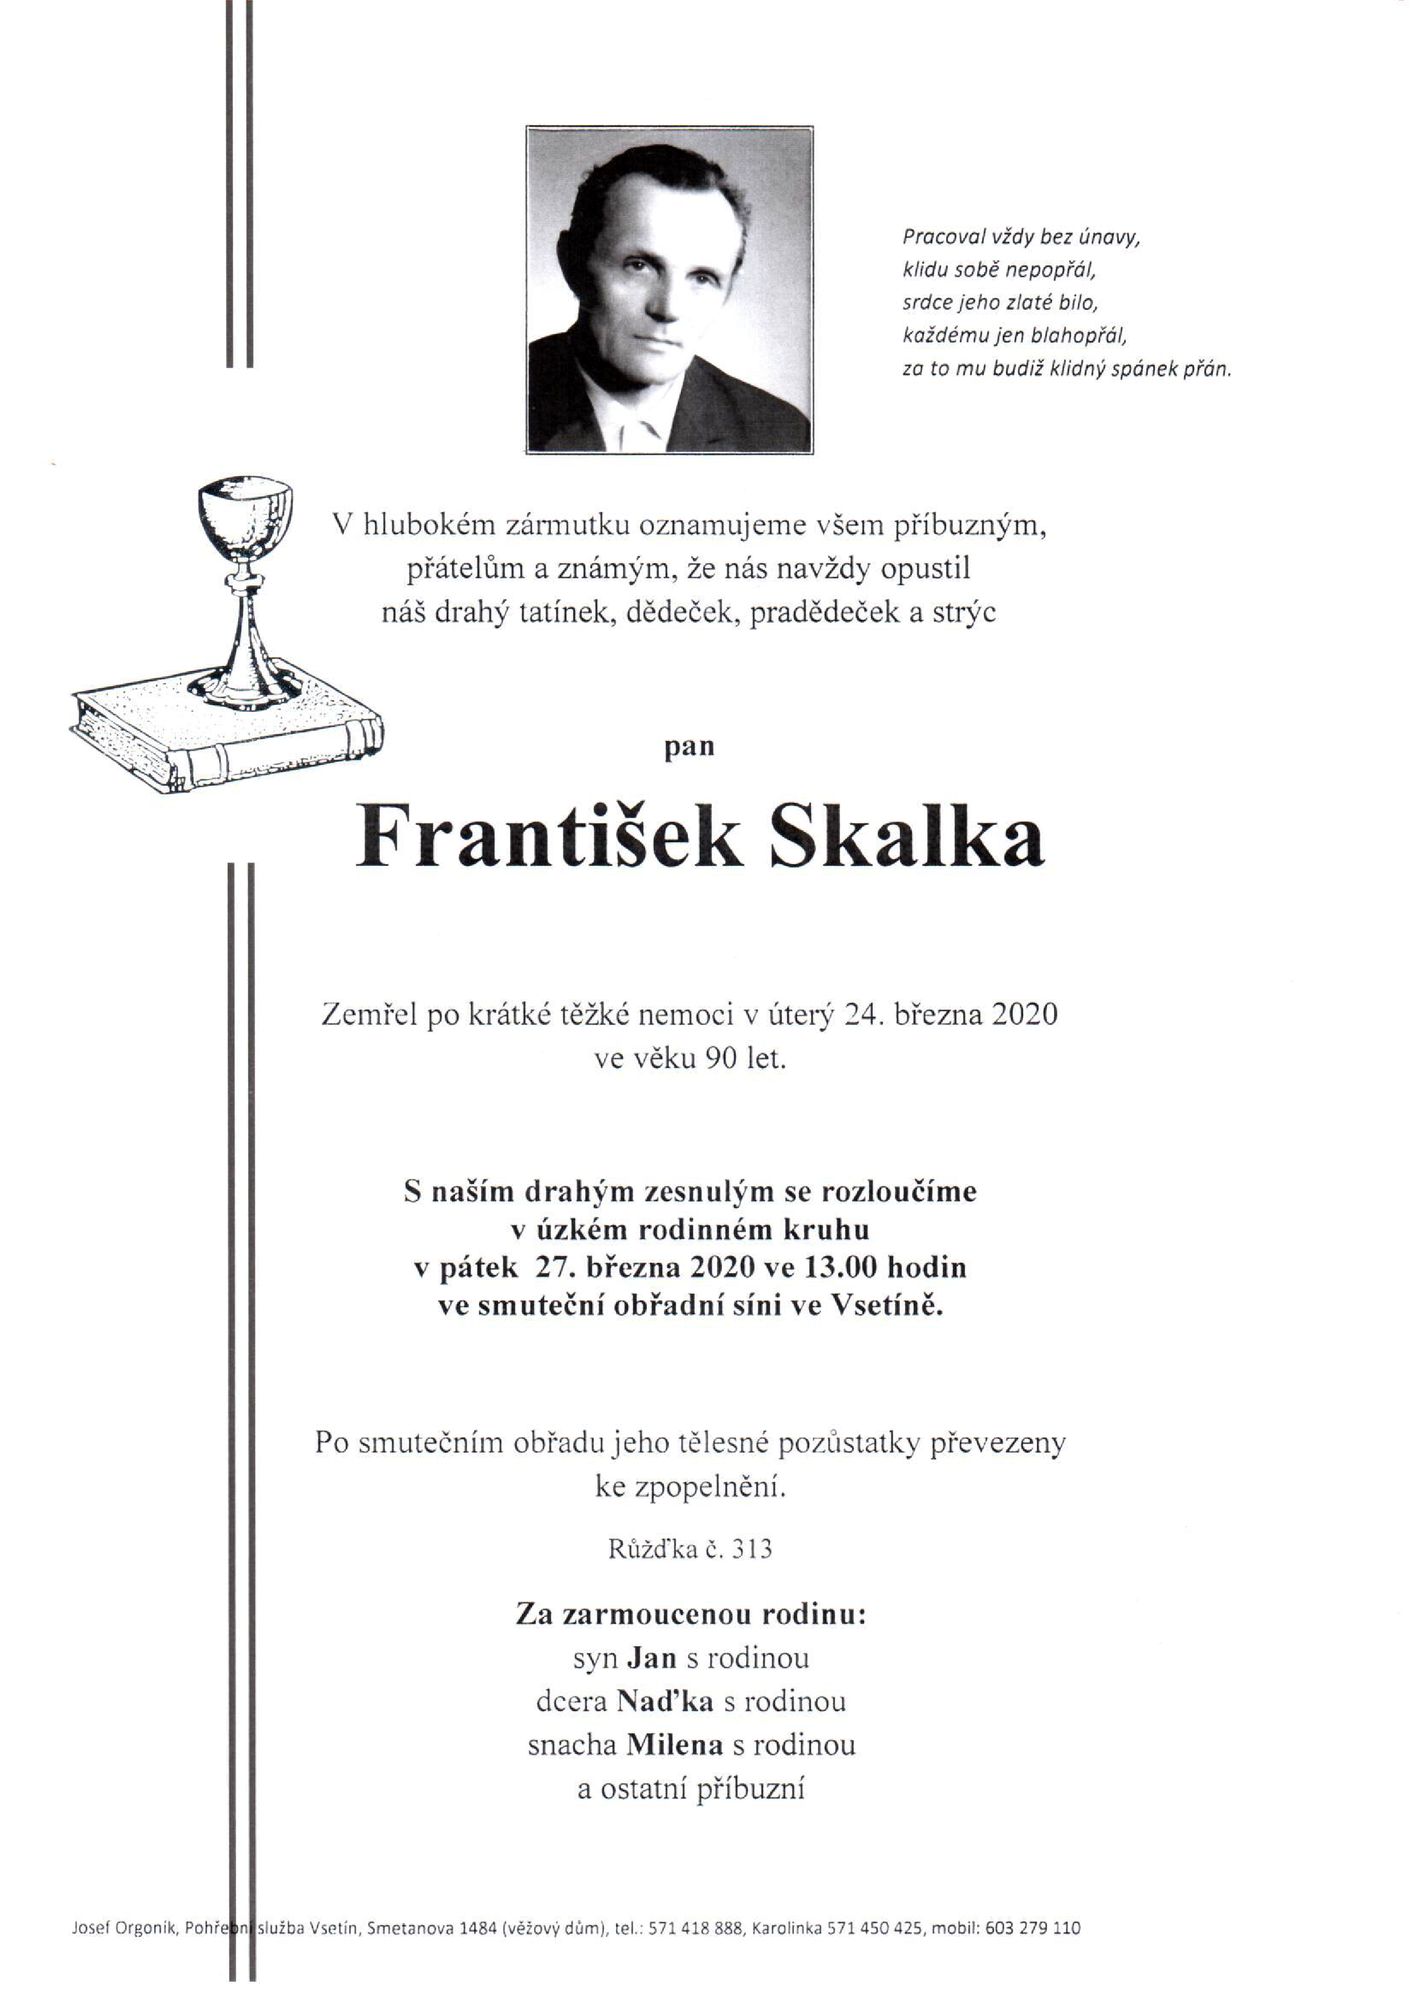 František Skalka